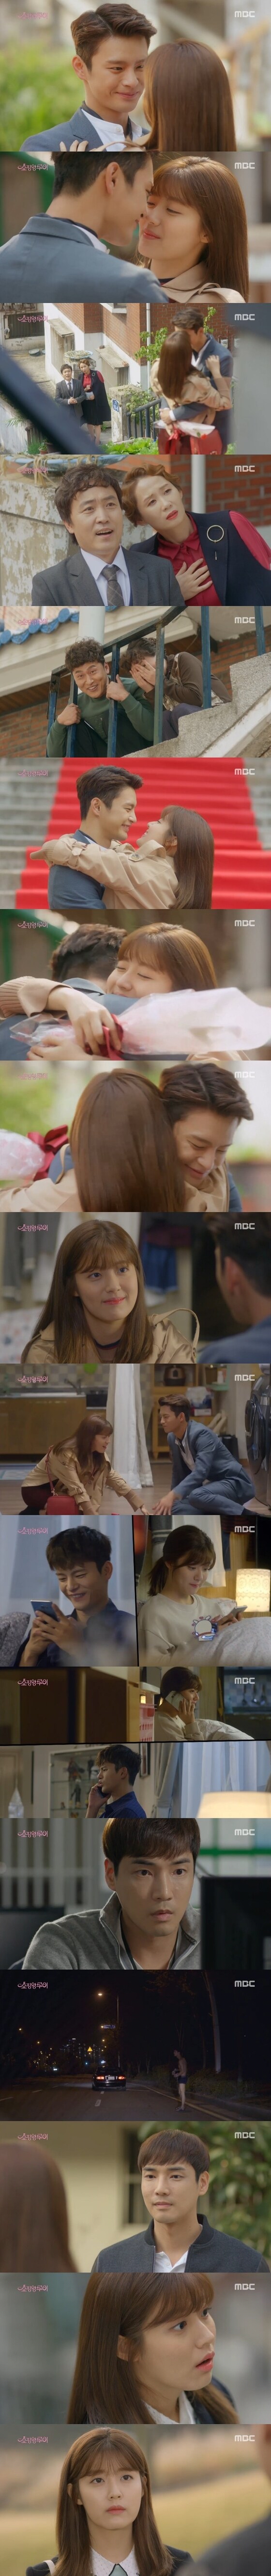 20일 밤 10시 MBC 수목드라마 '쇼핑왕 루이'가 방송됐다. © News1star / MBC '쇼핑왕 루이' 캡처